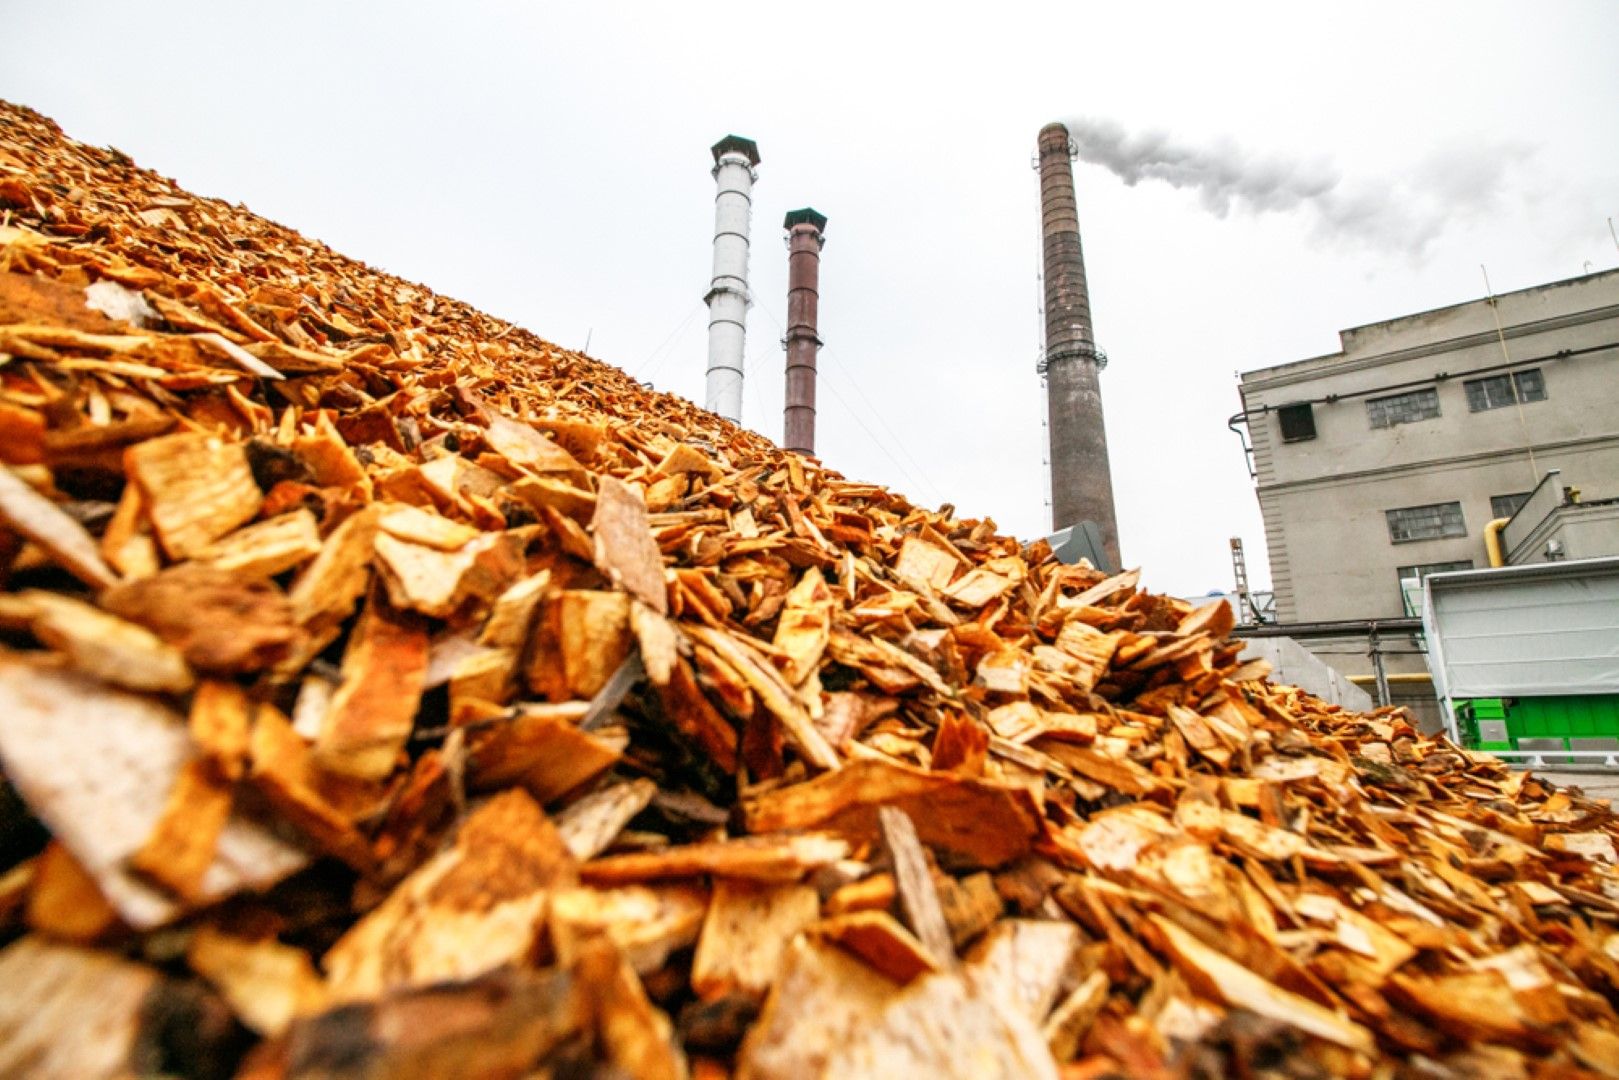 Съдържанието на пепел в 1 тон обработена дървесина и дървесни продукти е 88 пъти по-ниско от намиращото се в същото количество въглища